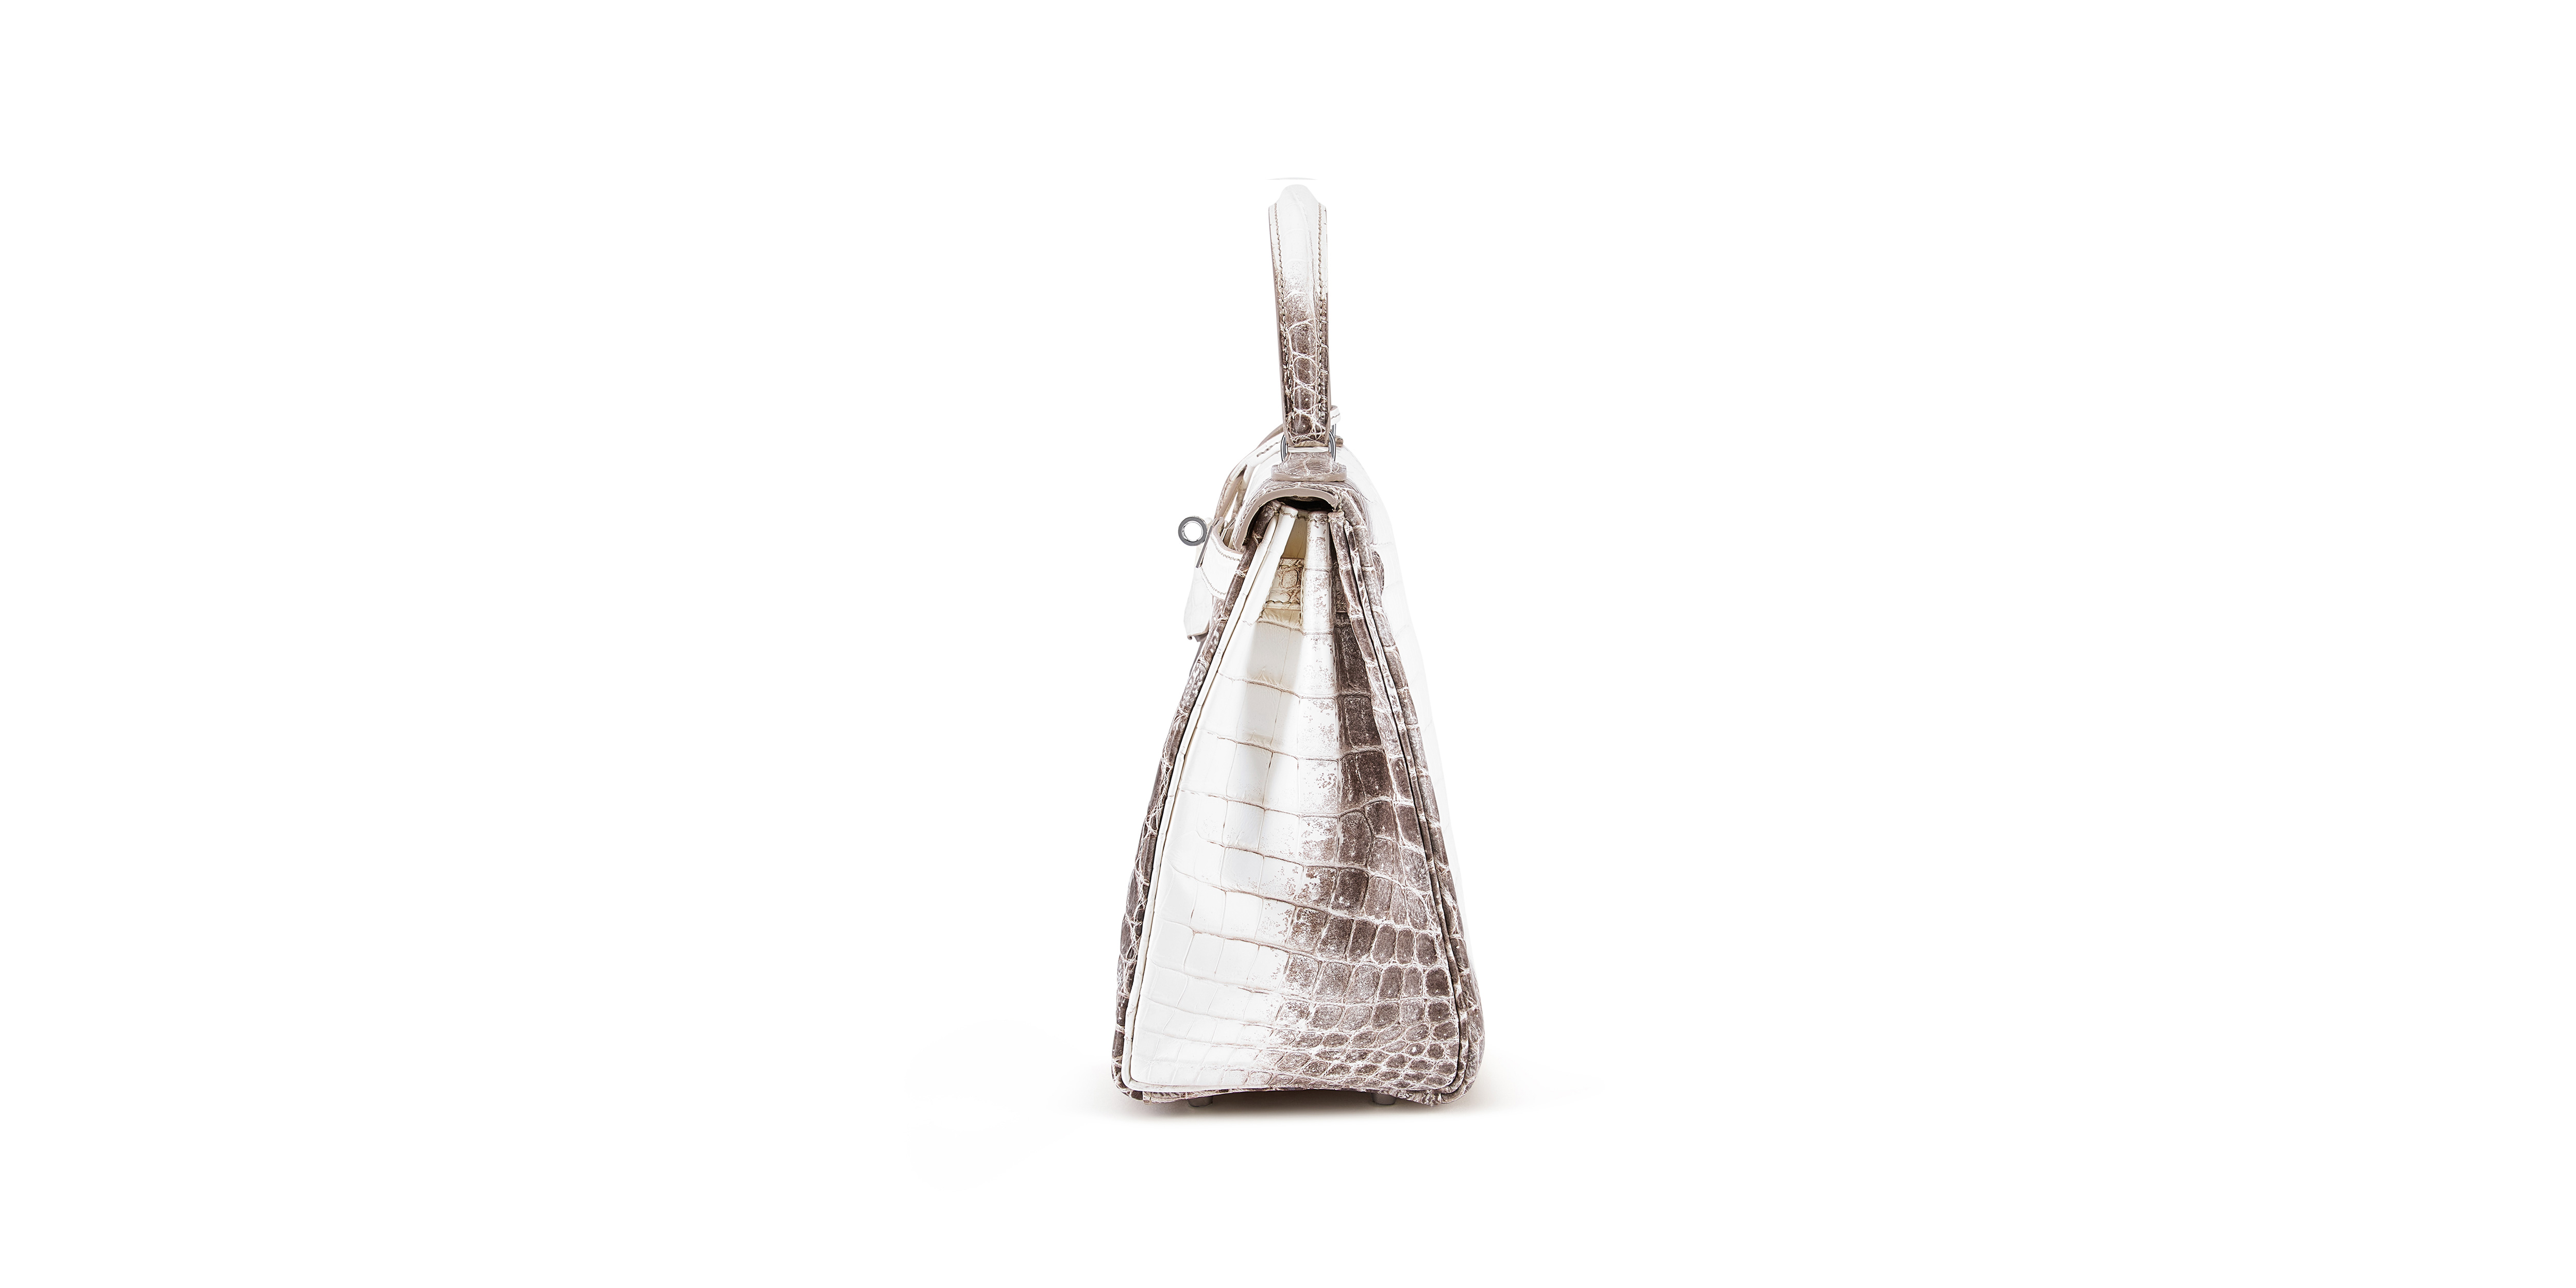 The Holy-Grail Hermès Birkin 💎 Himalaya with diamonds